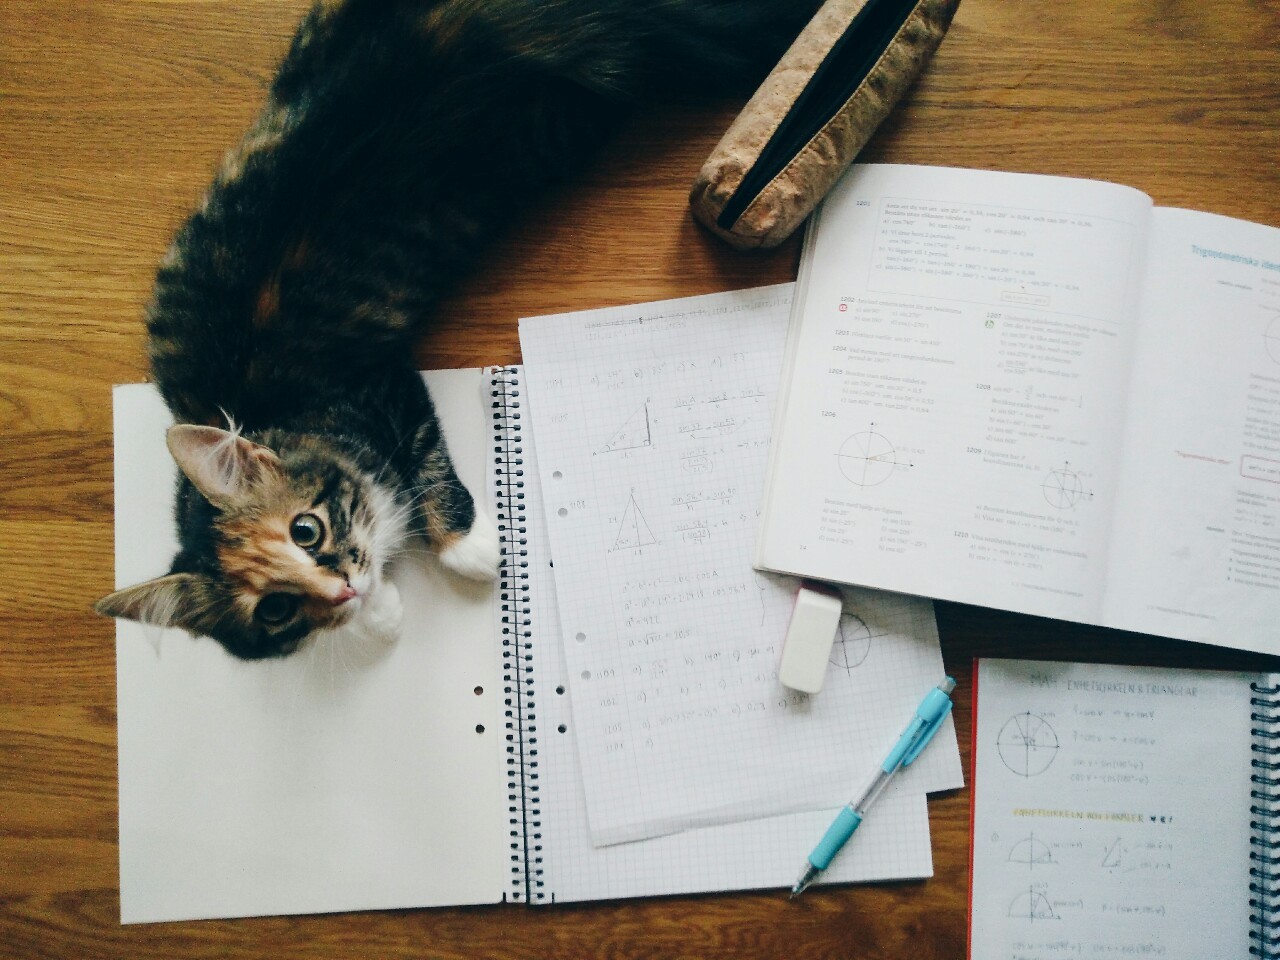 cadernos, livros, caneta, borracha e estojos espalhados e um gato deitado em cima de um dos cadernos